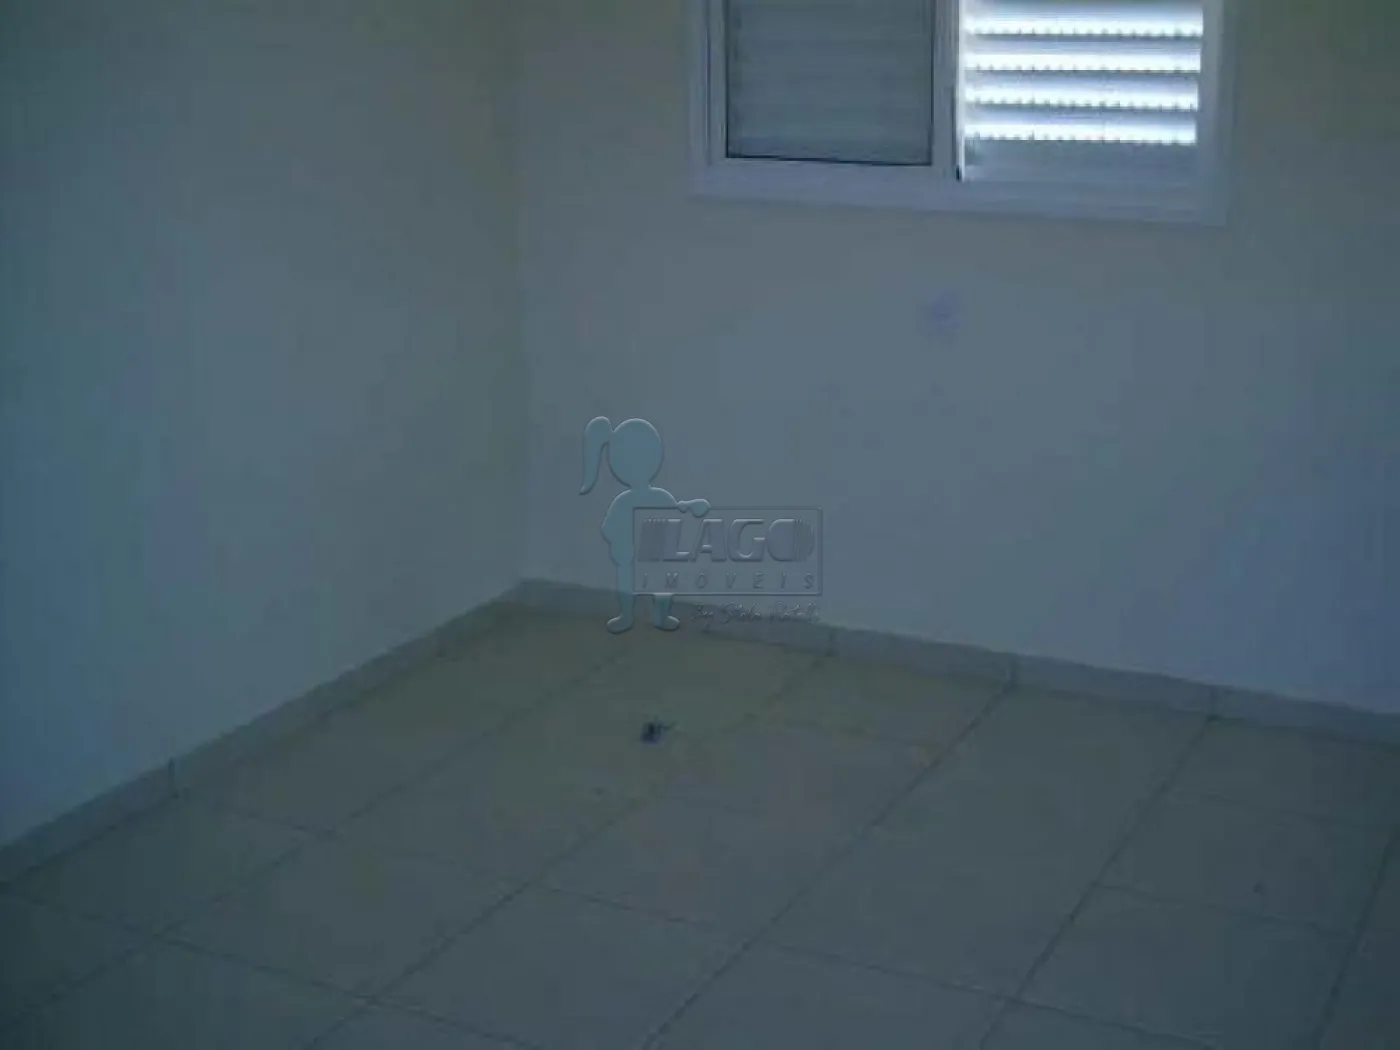 Comprar Apartamentos / Padrão em Ribeirão Preto R$ 480.000,00 - Foto 3